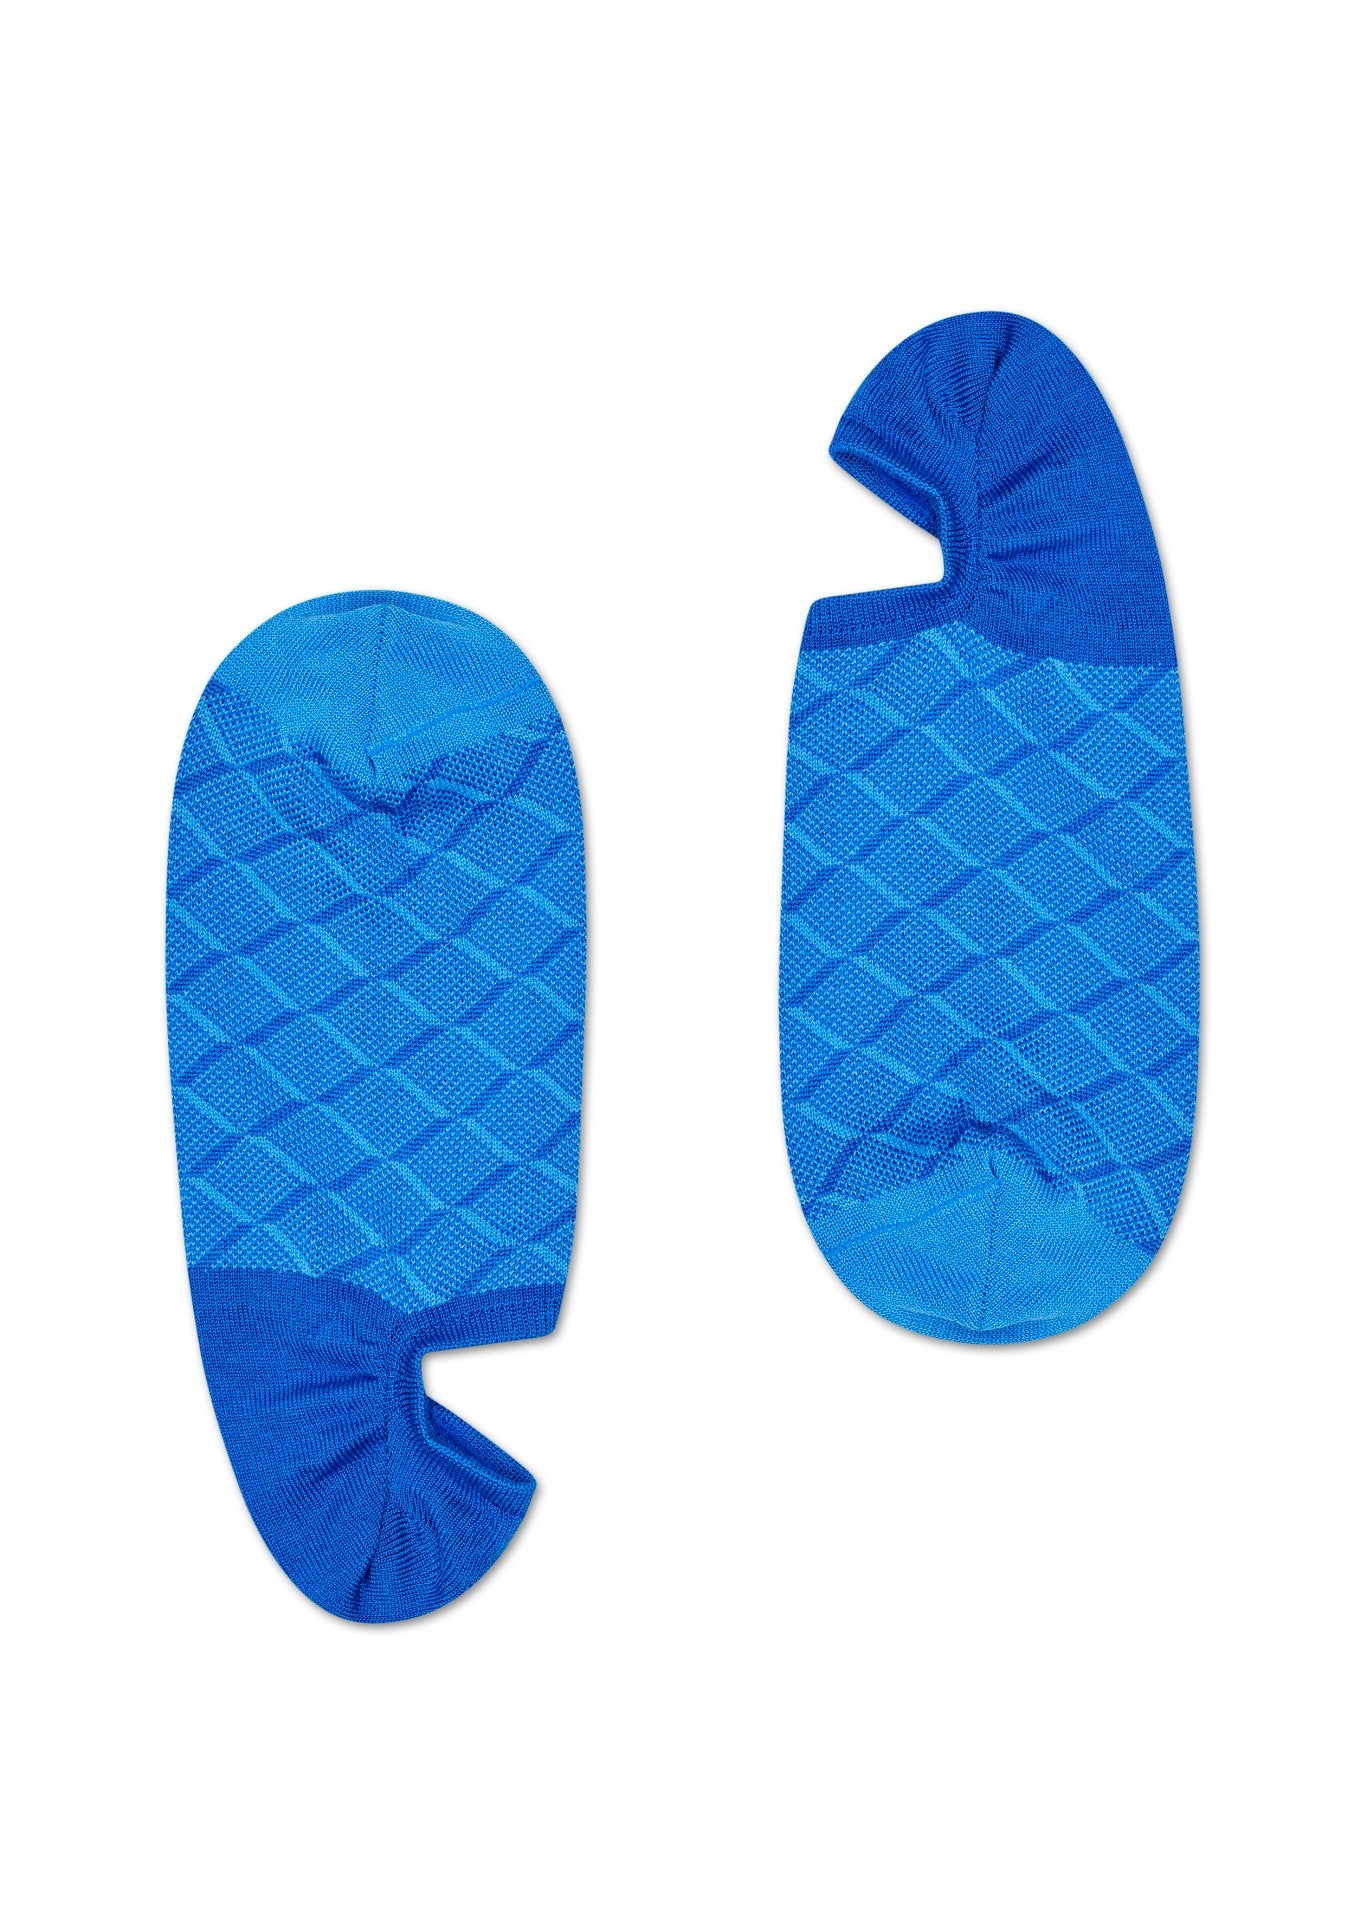 Modré nízké vykrojené ponožky Happy Socks, vzor Square Optic // KOLEKCE DRESSED